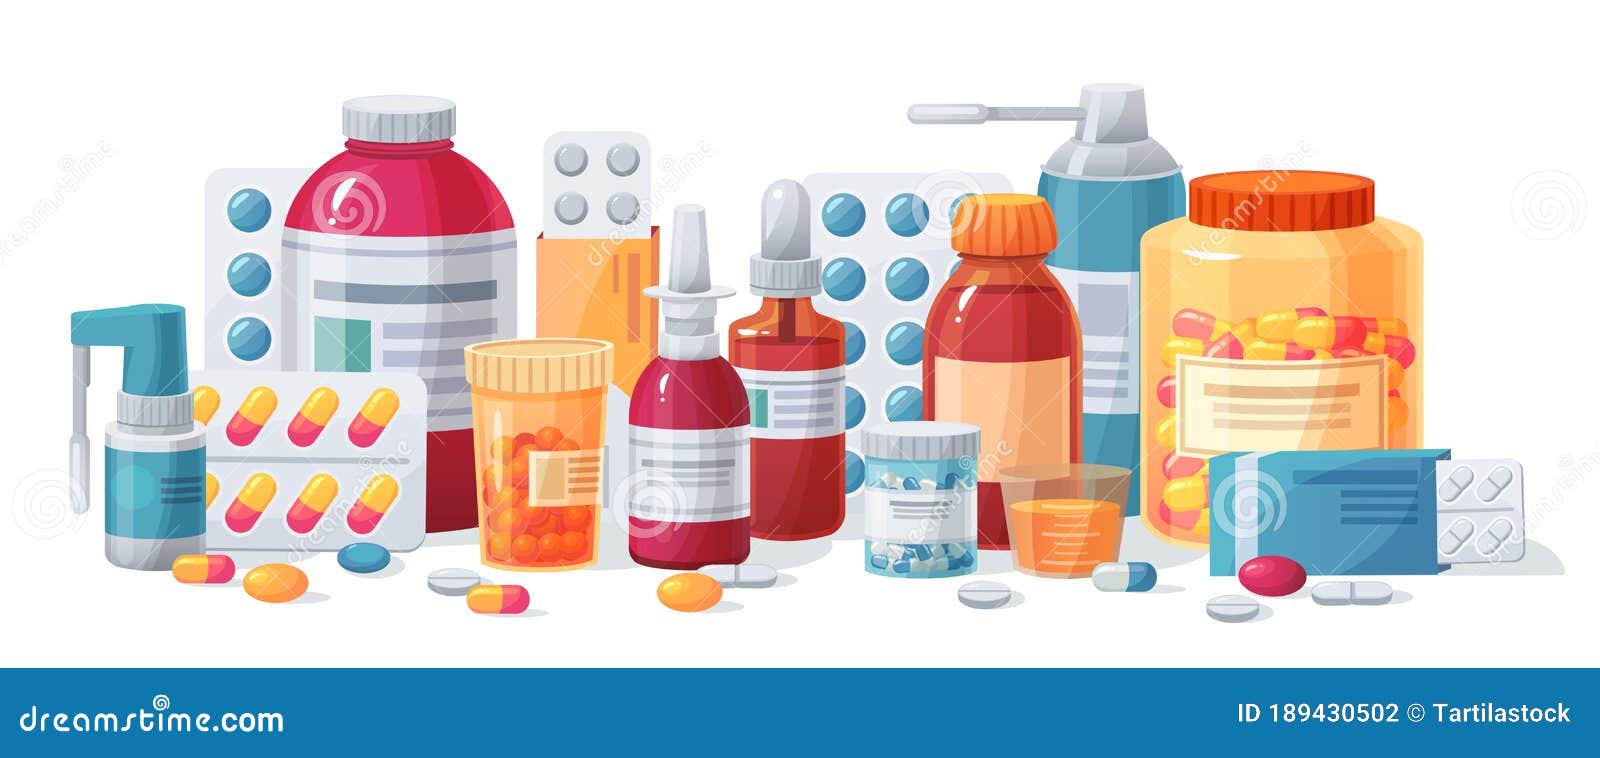 cartoon meds. drugs, tablet capsules and prescription bottles. blisters and painkiller drug  pharmacy medication